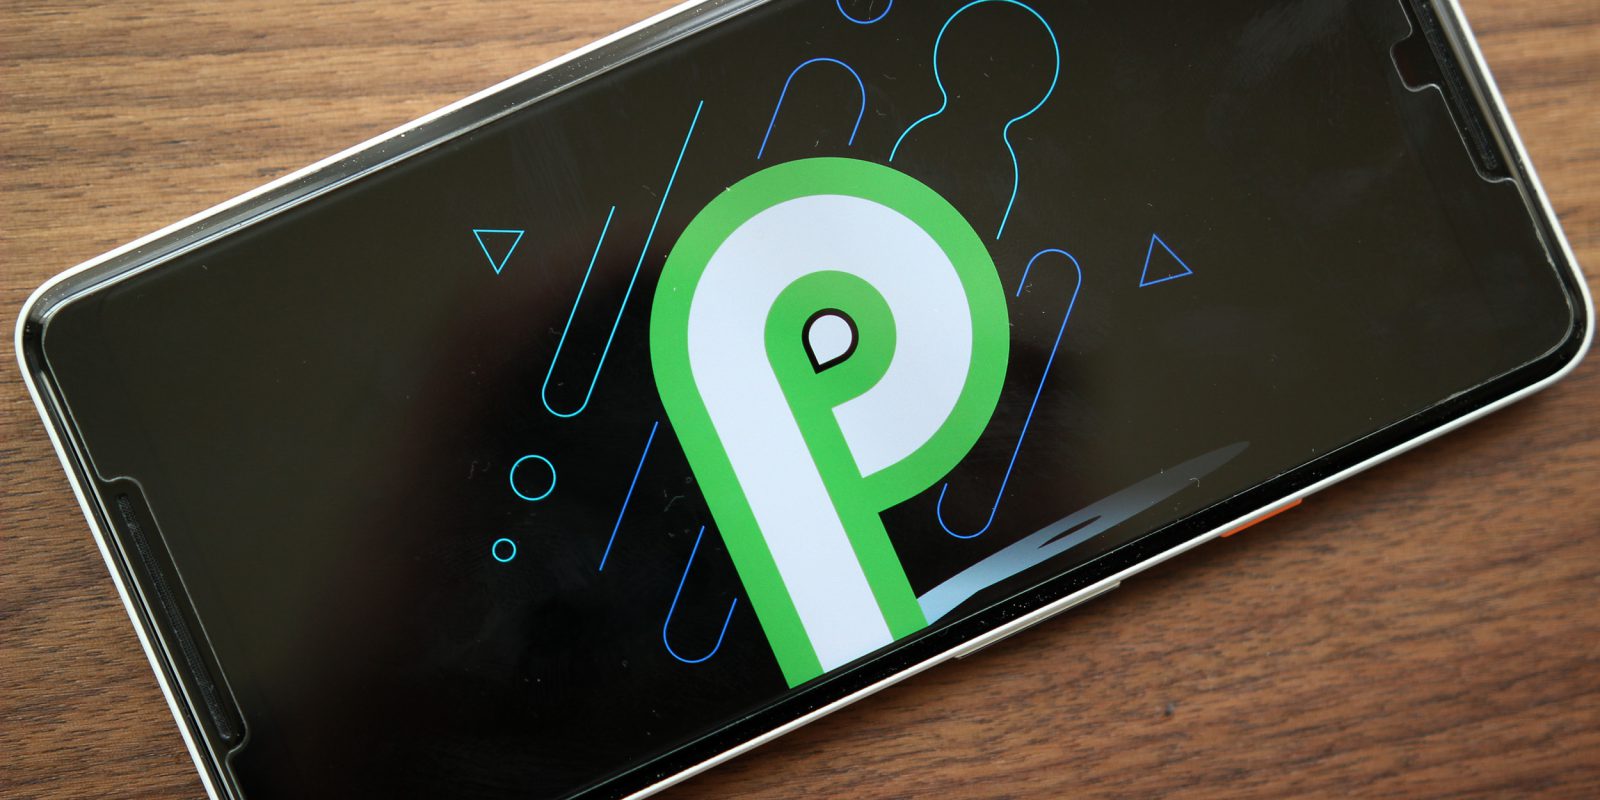 الكشف عن خاصية جديدة من خواص نظام تشغيل أندرويد القادم Android P